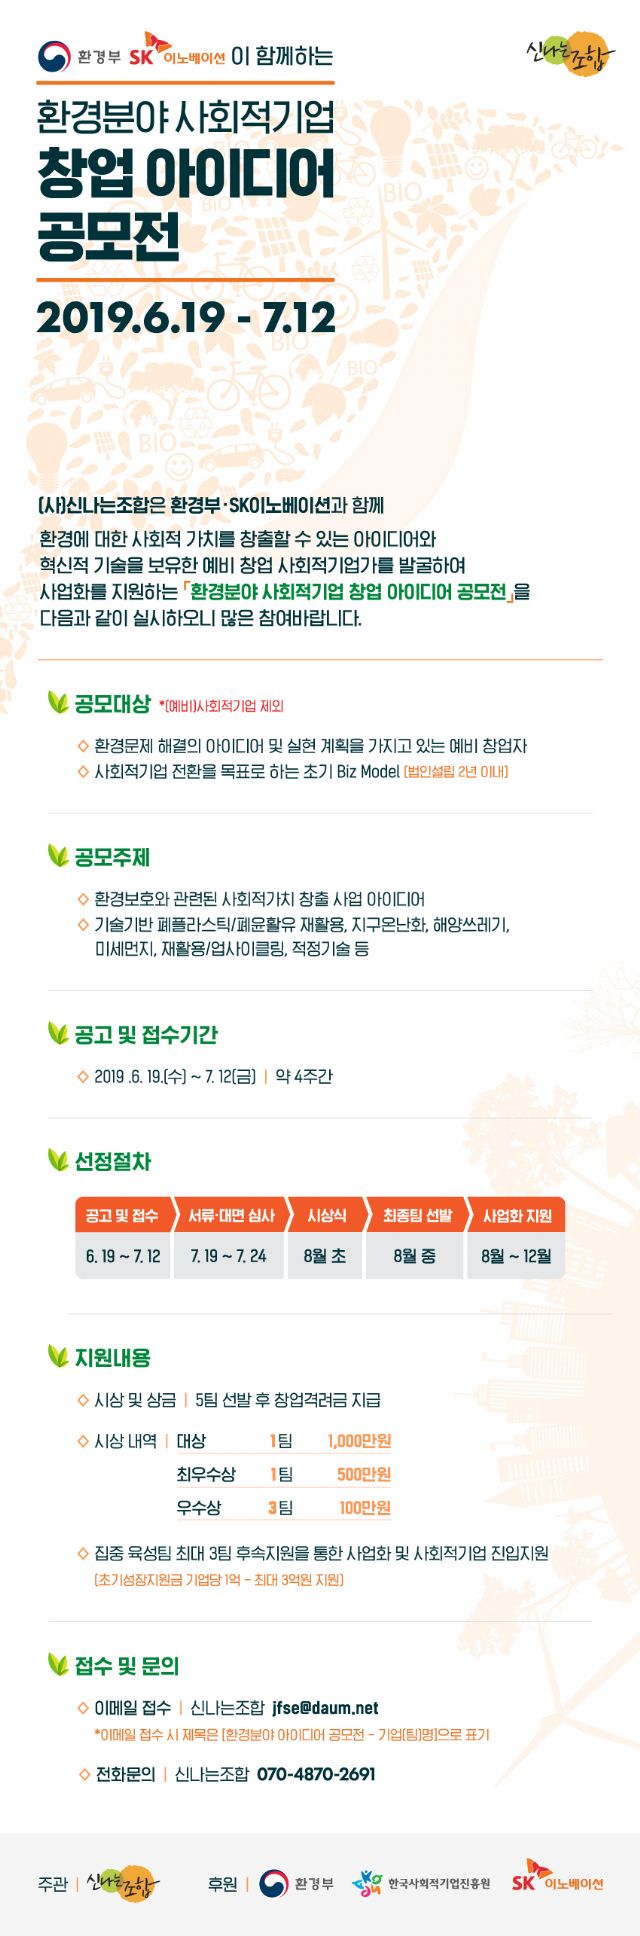 SK이노, 환경 사회적기업 창업 아이디어 공모전 개최